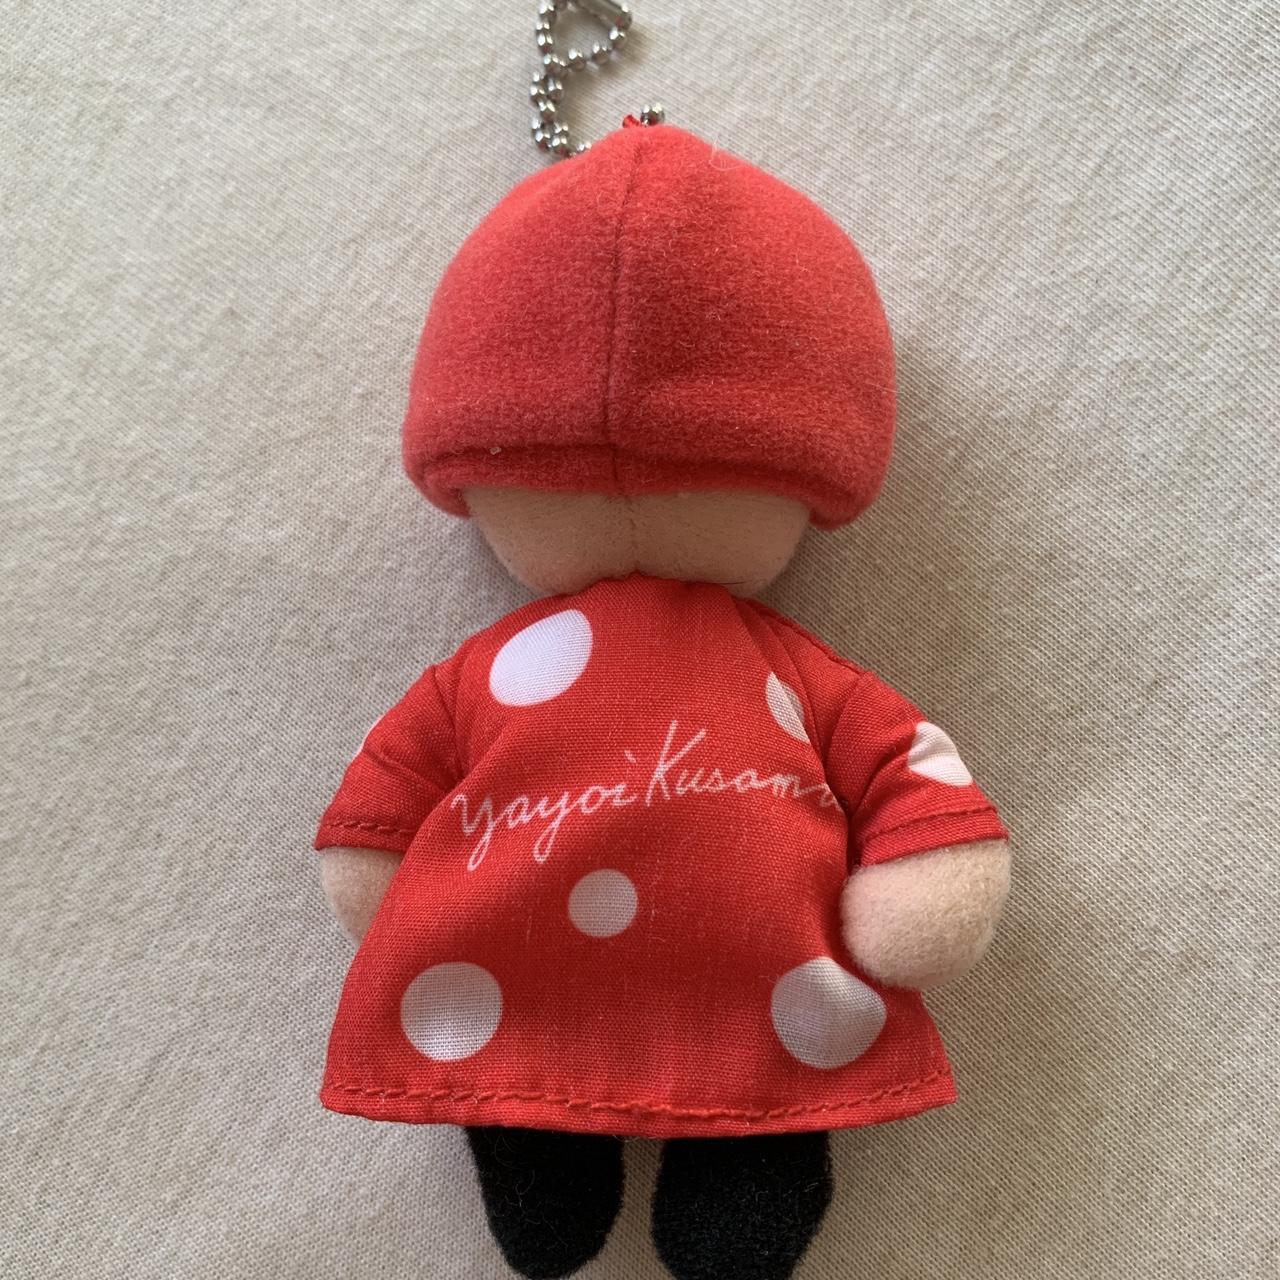 Yayoi Kusama Key Chain Plush Mascot 2-piece Set Mori Museum